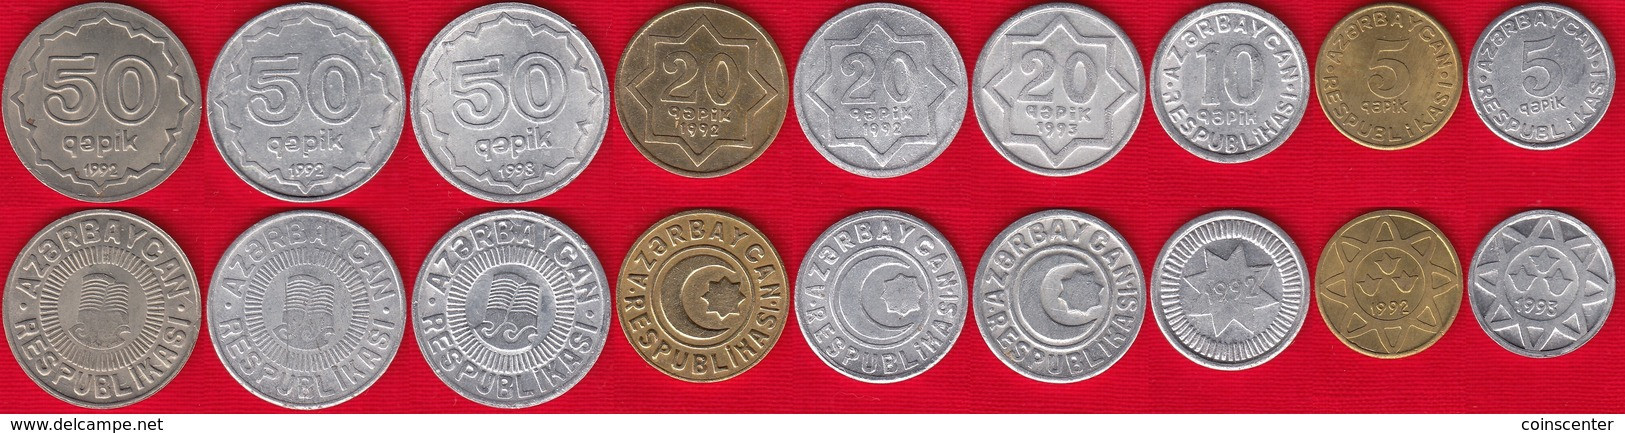 Azerbaijan Set Of 9 Coins: 5 - 50 Qəpik (qapik) 1992-1993 XF-UNC - Azerbaïjan